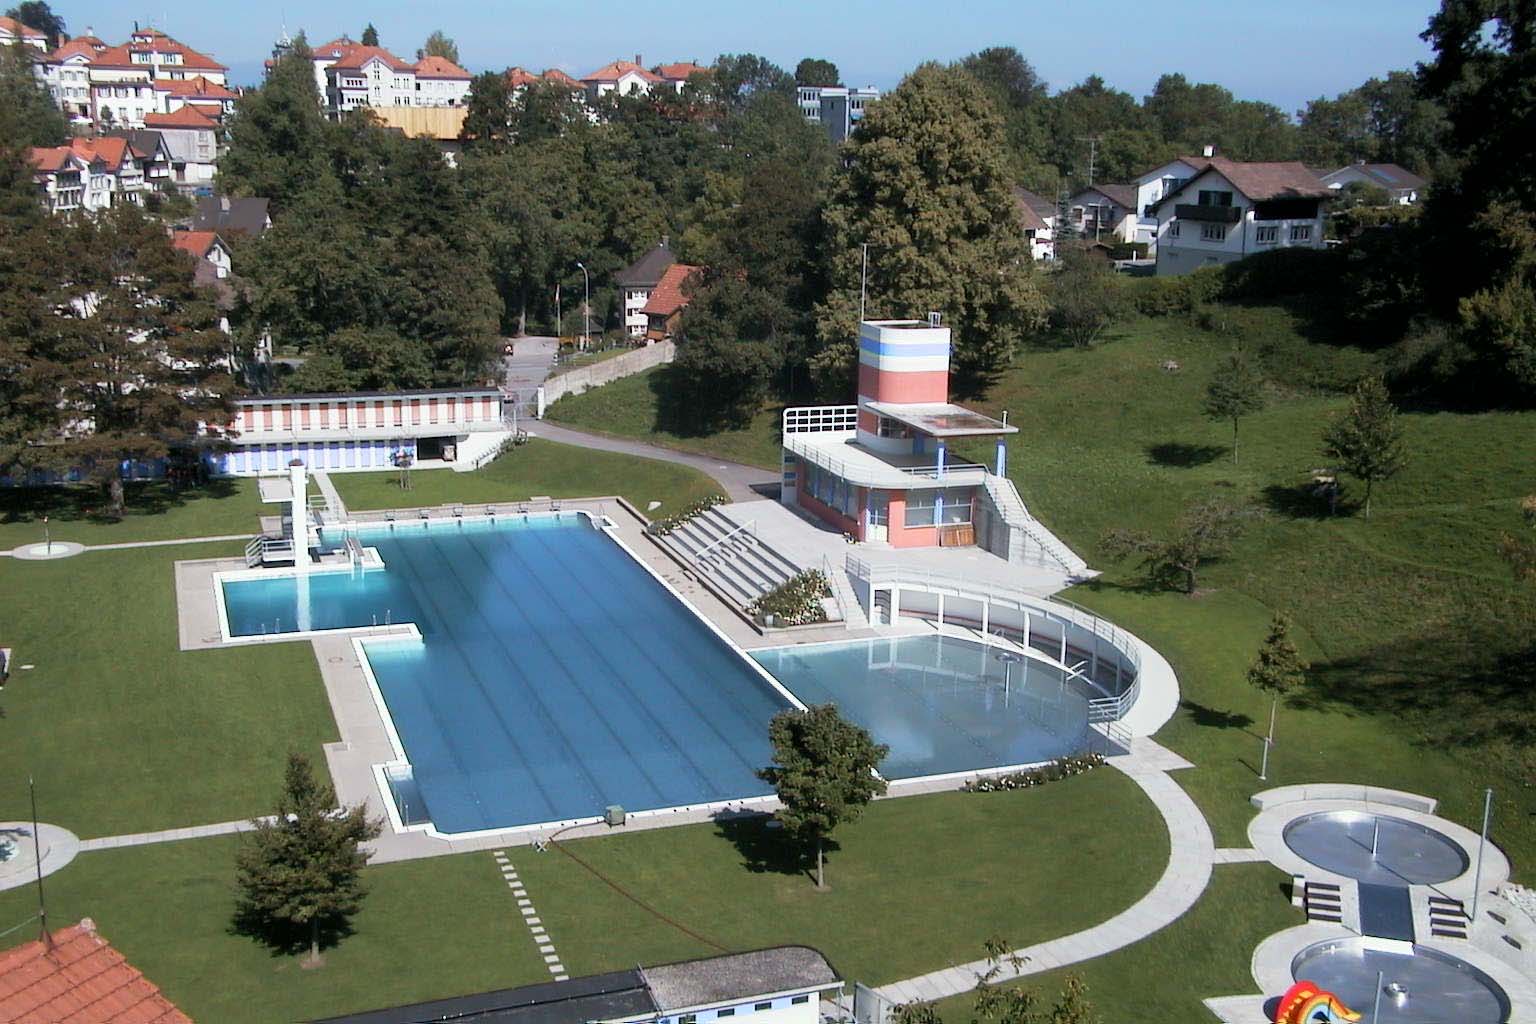 Die 1931 von Beda Hefti entworfene Badi Heiden ist eines der letzten erhaltenen Bäder aus dieser Epoche und gilt als eine der schönsten Badeanlagen der Schweiz.